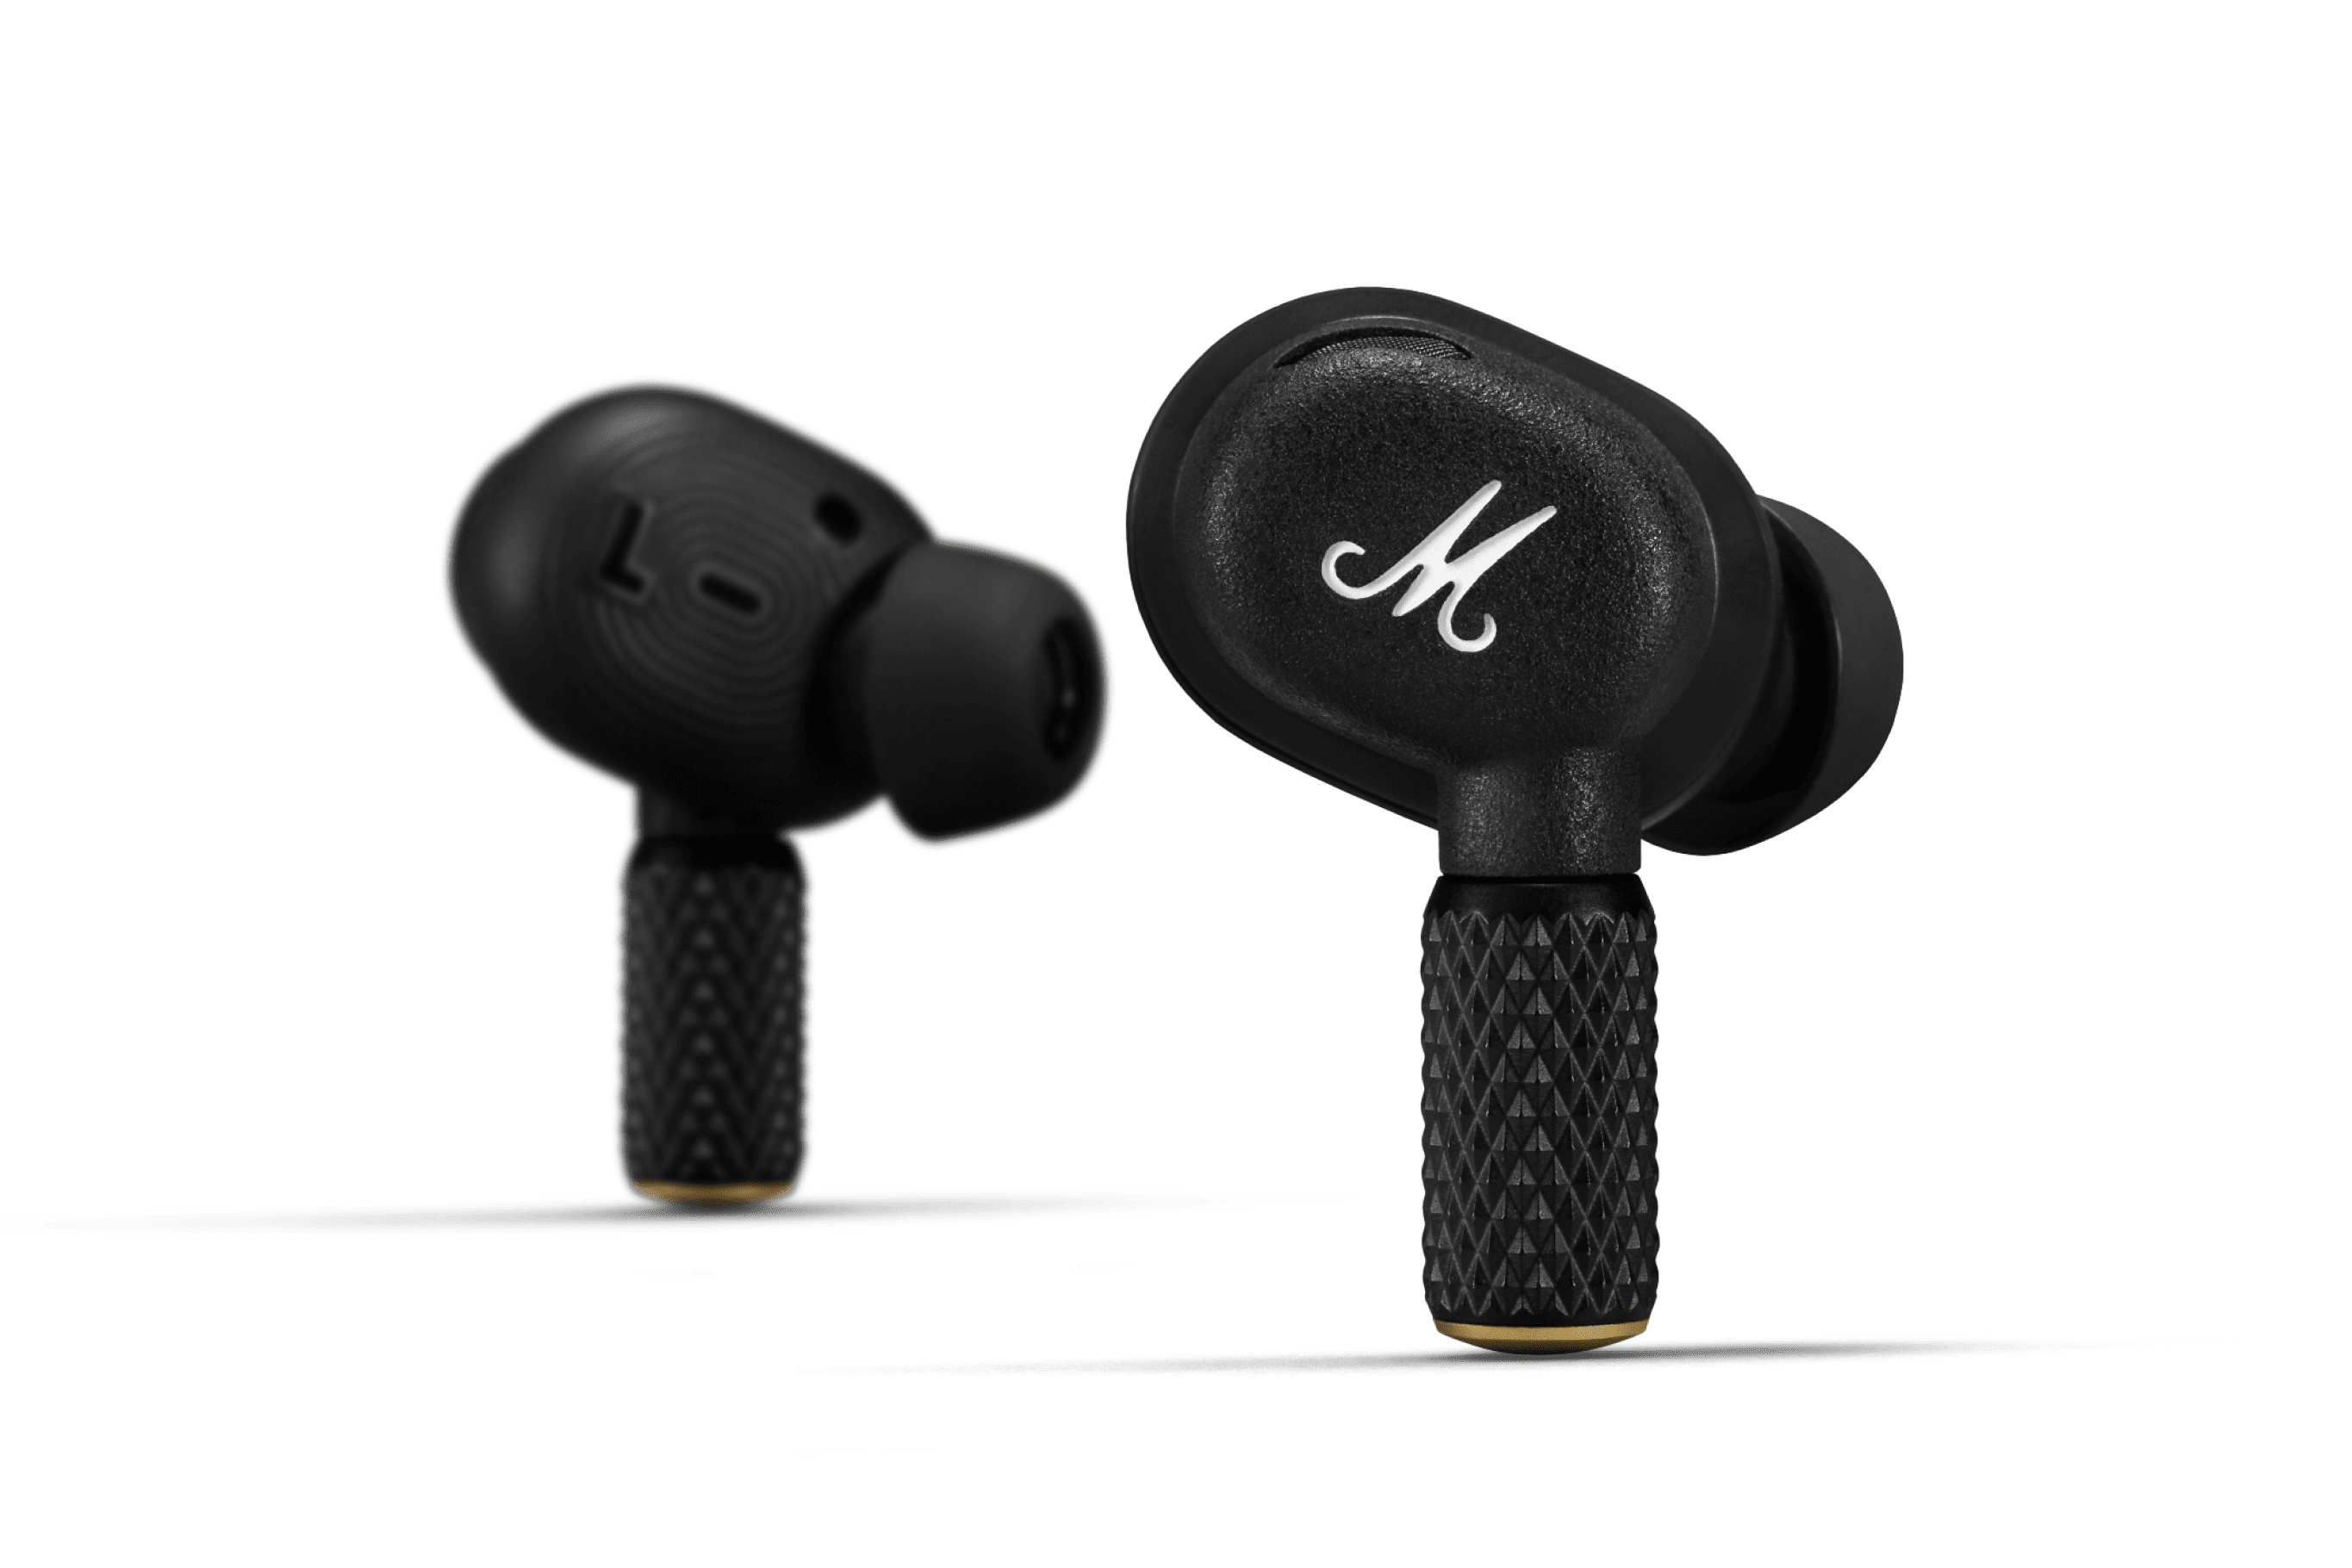 Motif II A.N.C. in-ear headphones